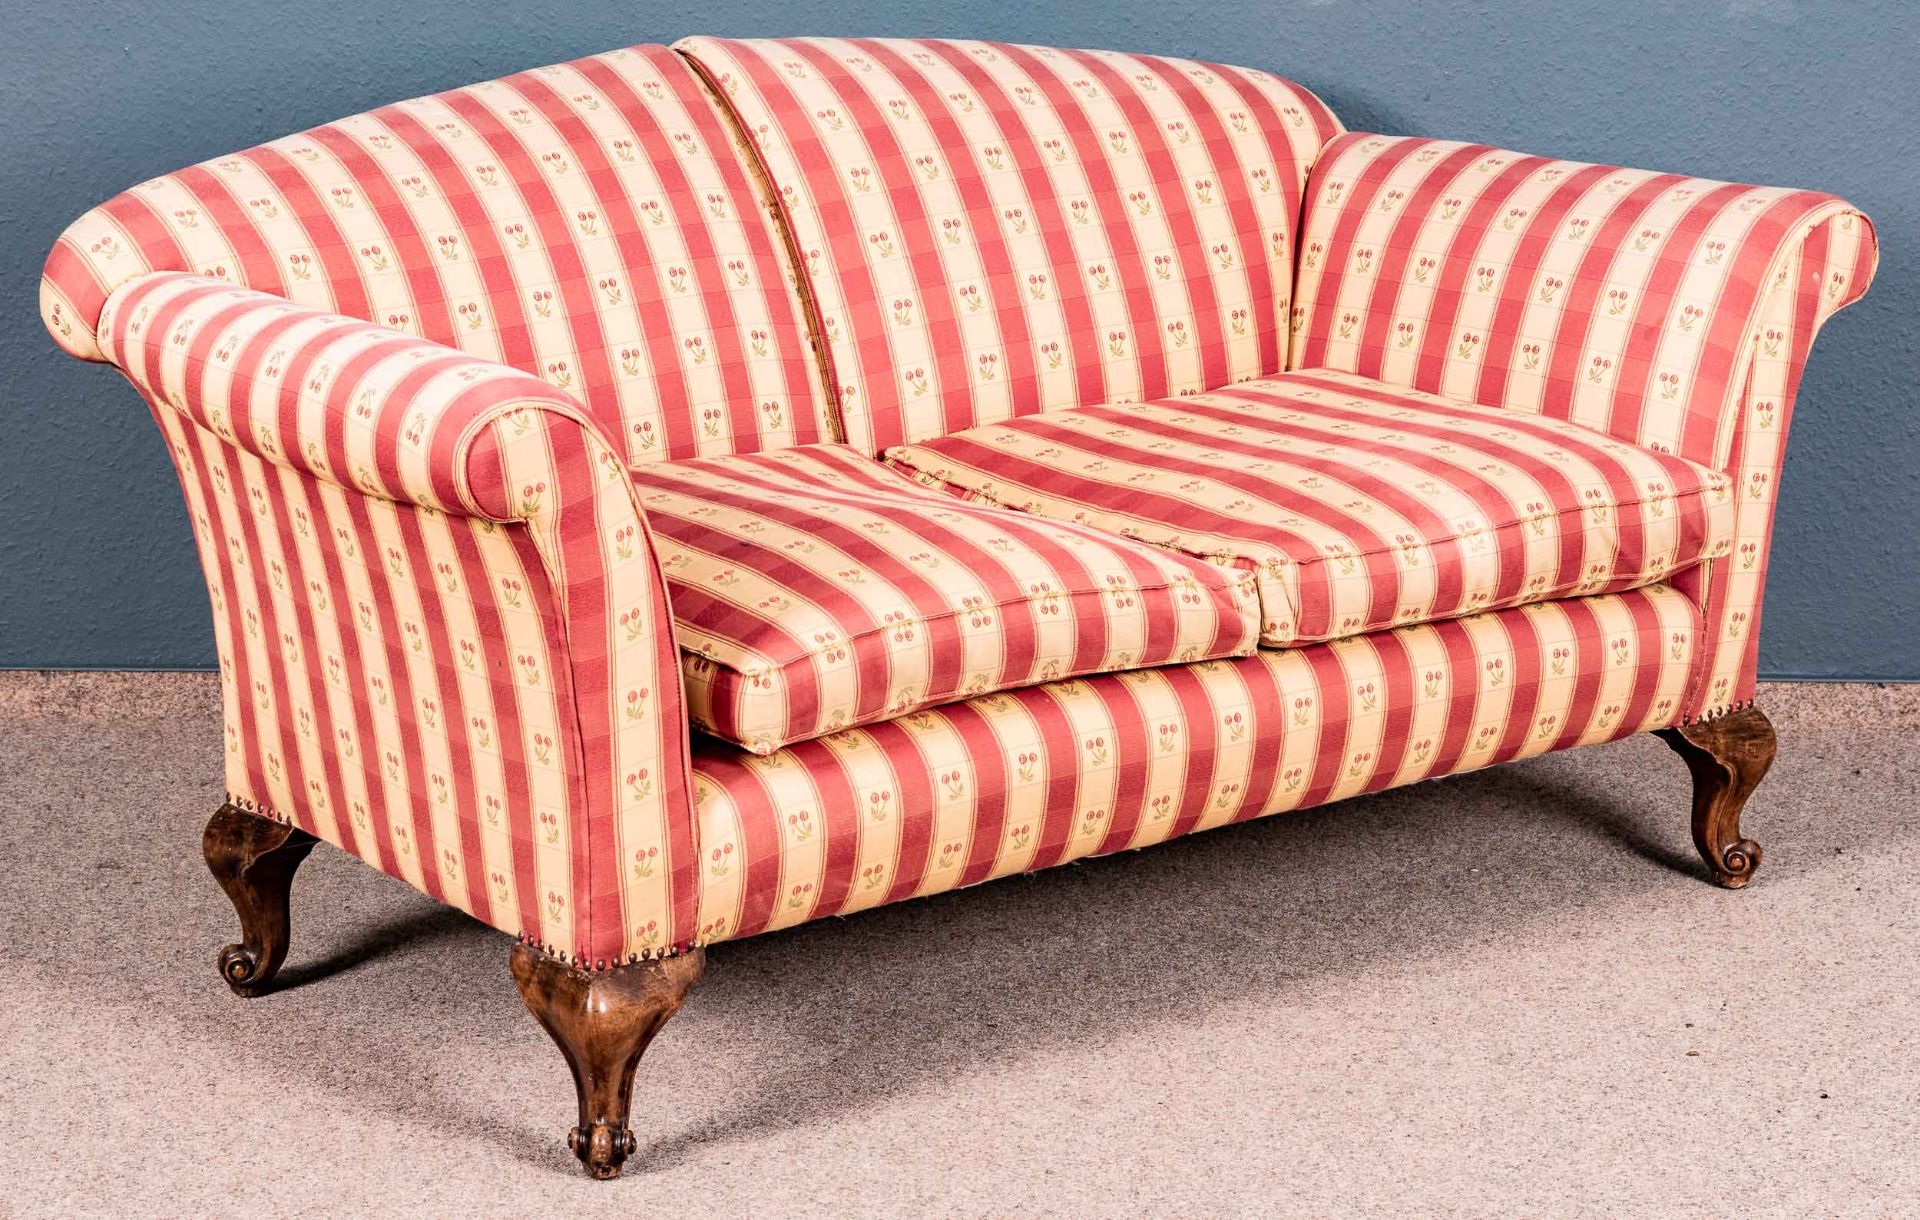 Englisches Sofa/Couch; freistehend gearbeitetes, 2sitziges Sofa mit gebogenen Lehnen, losen Sitzkis - Bild 2 aus 3